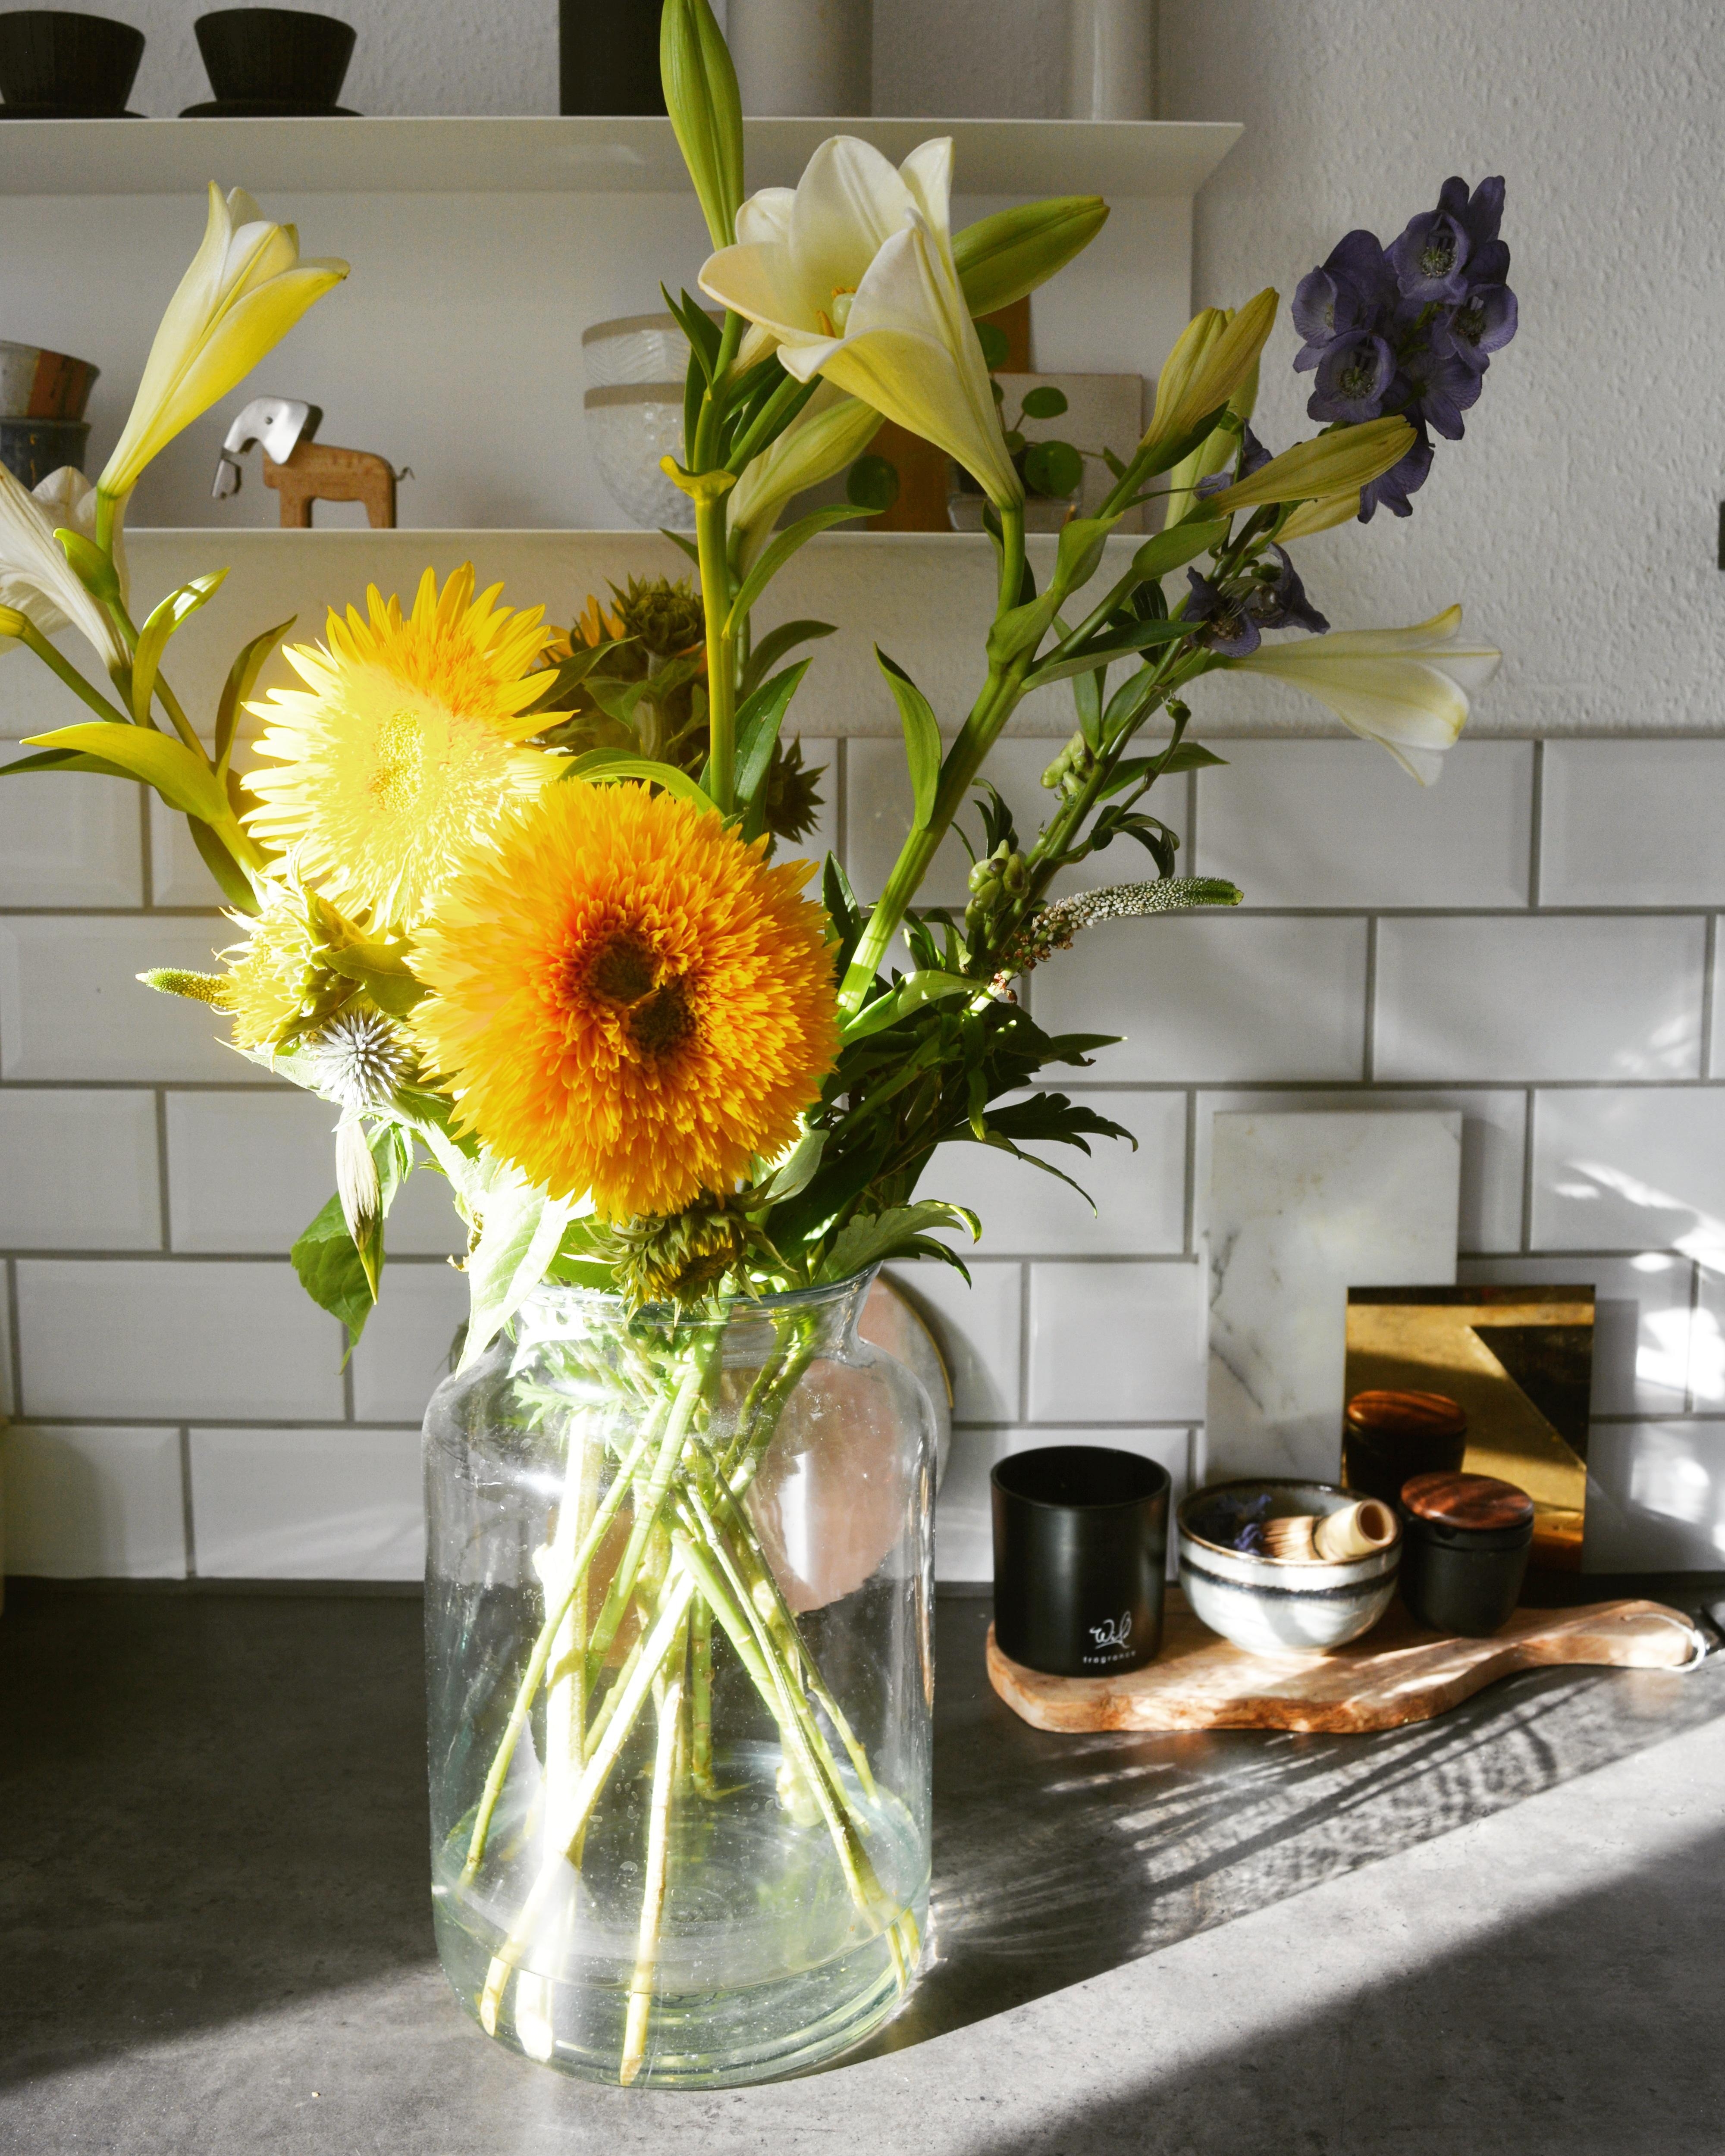 Schockverliebt in diese doppelt gefüllten Sonnenblumen.🌻

#Sommer#Blumenliebe#frischeBlumen#Küchendetails